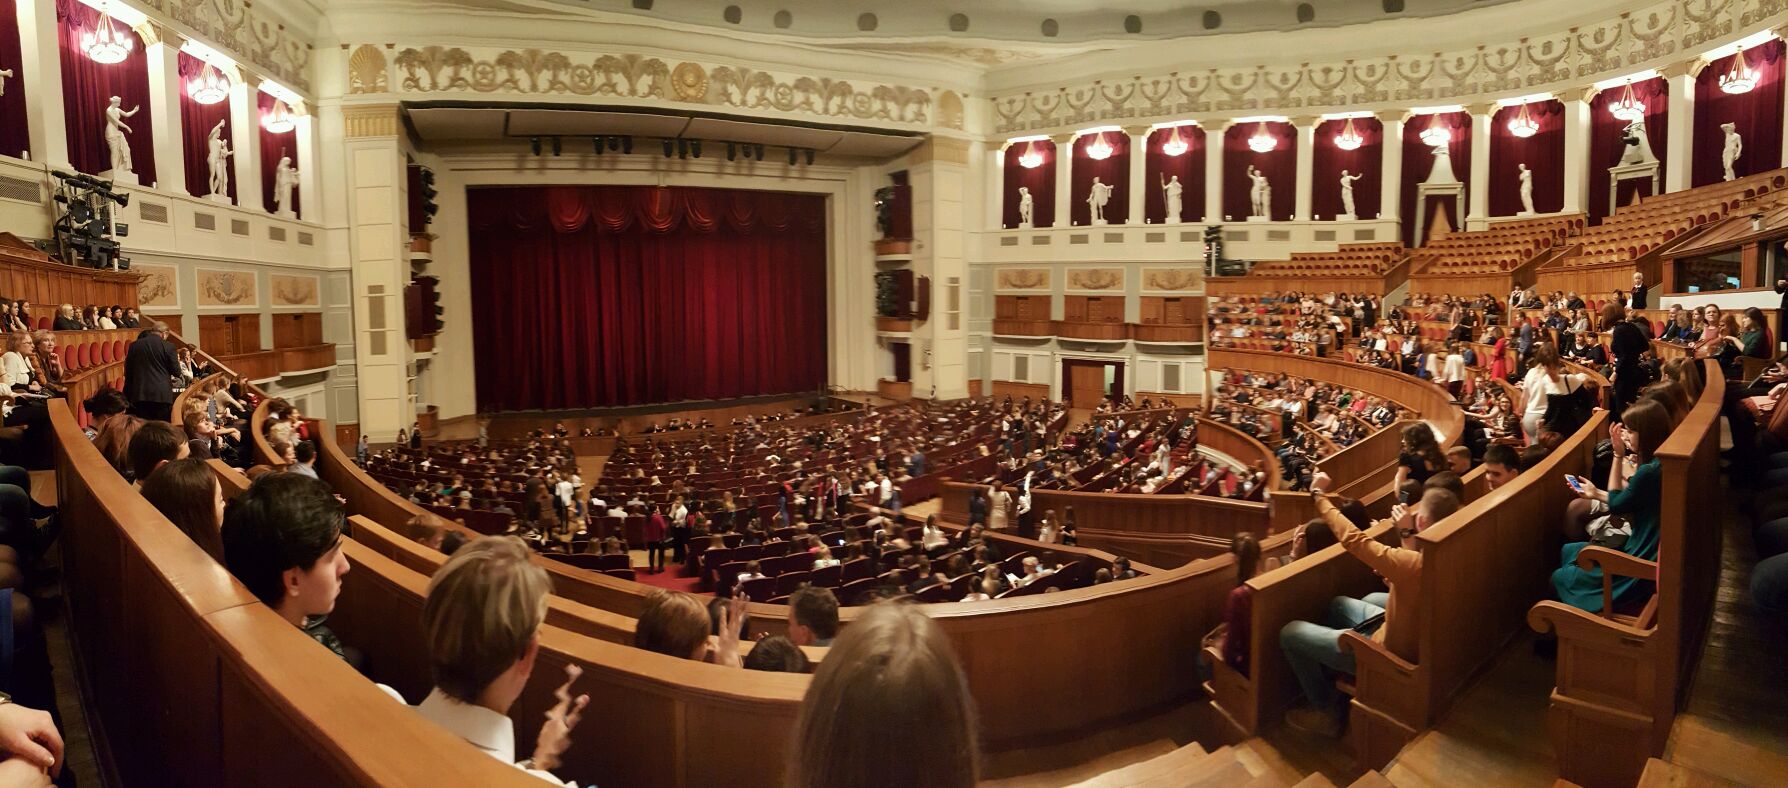 воронежский театр оперы и балета зал